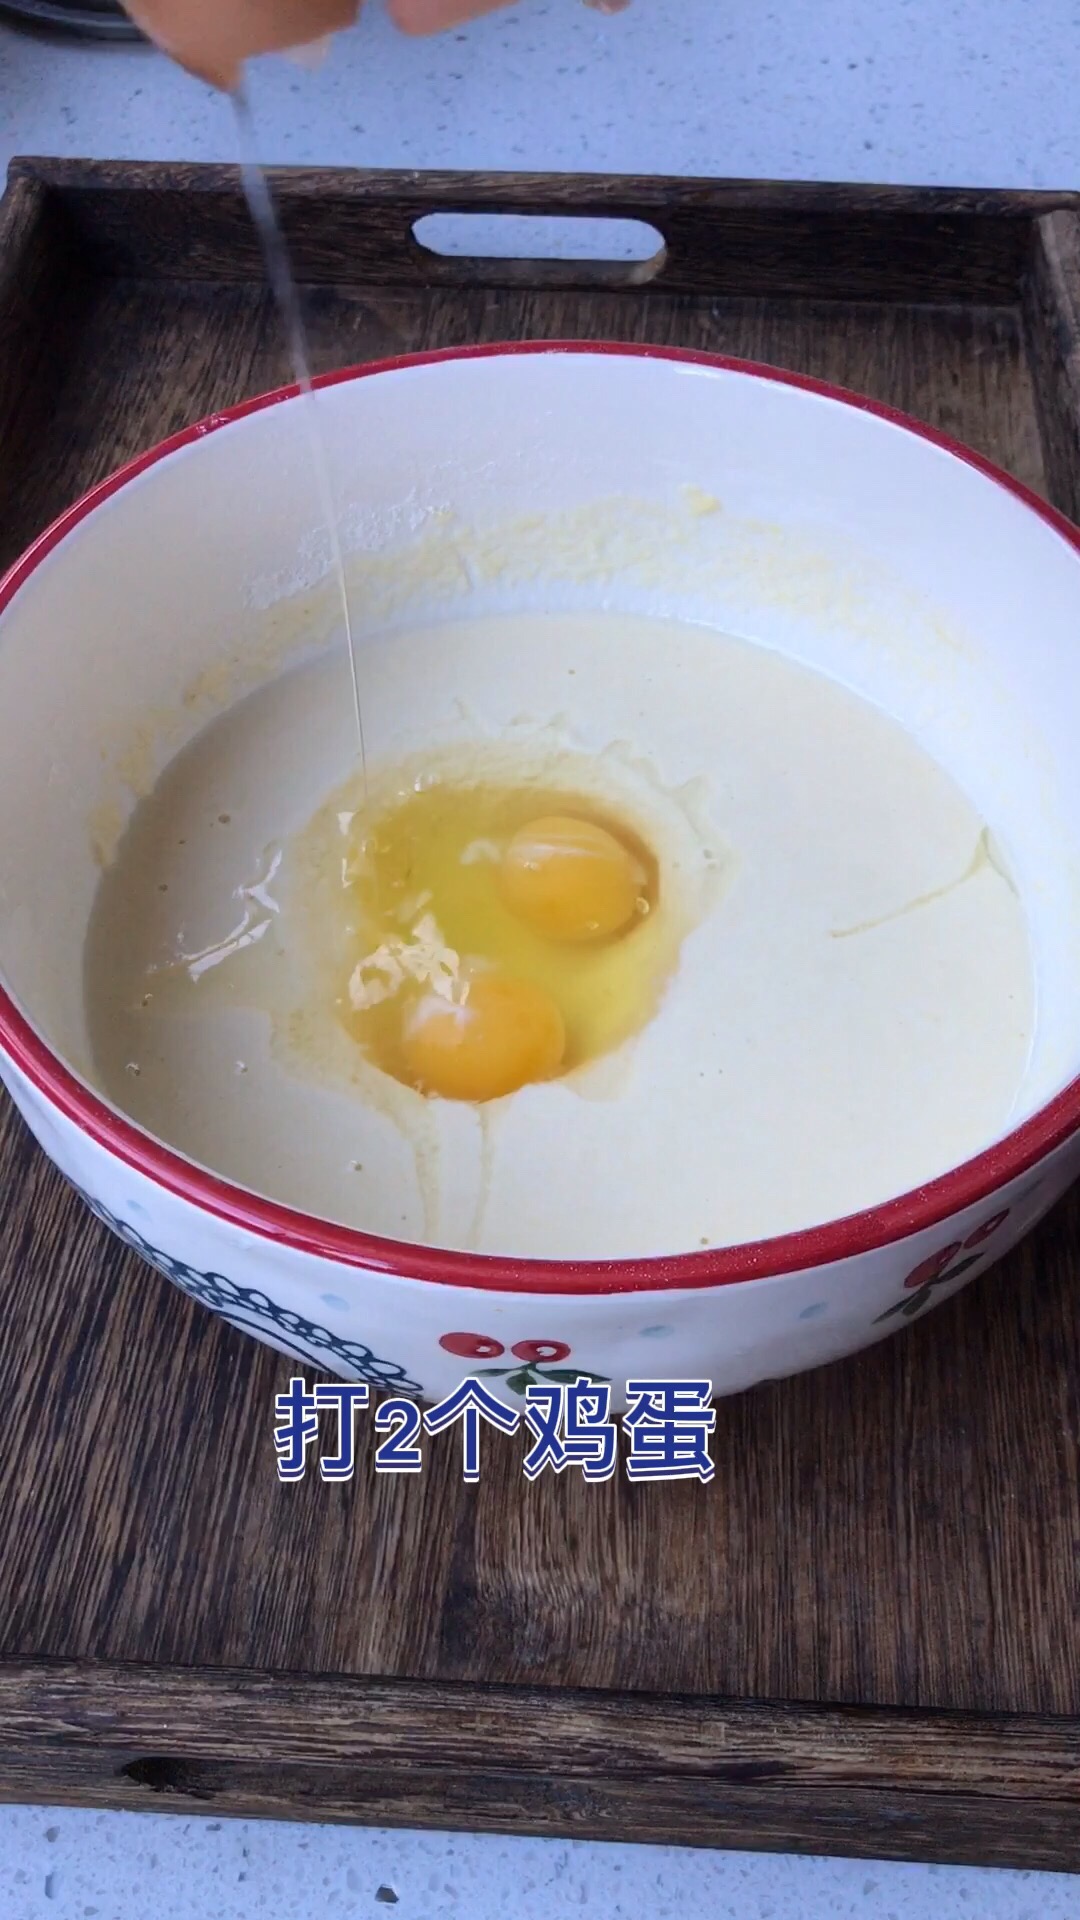 Breakfast Egg Custard recipe